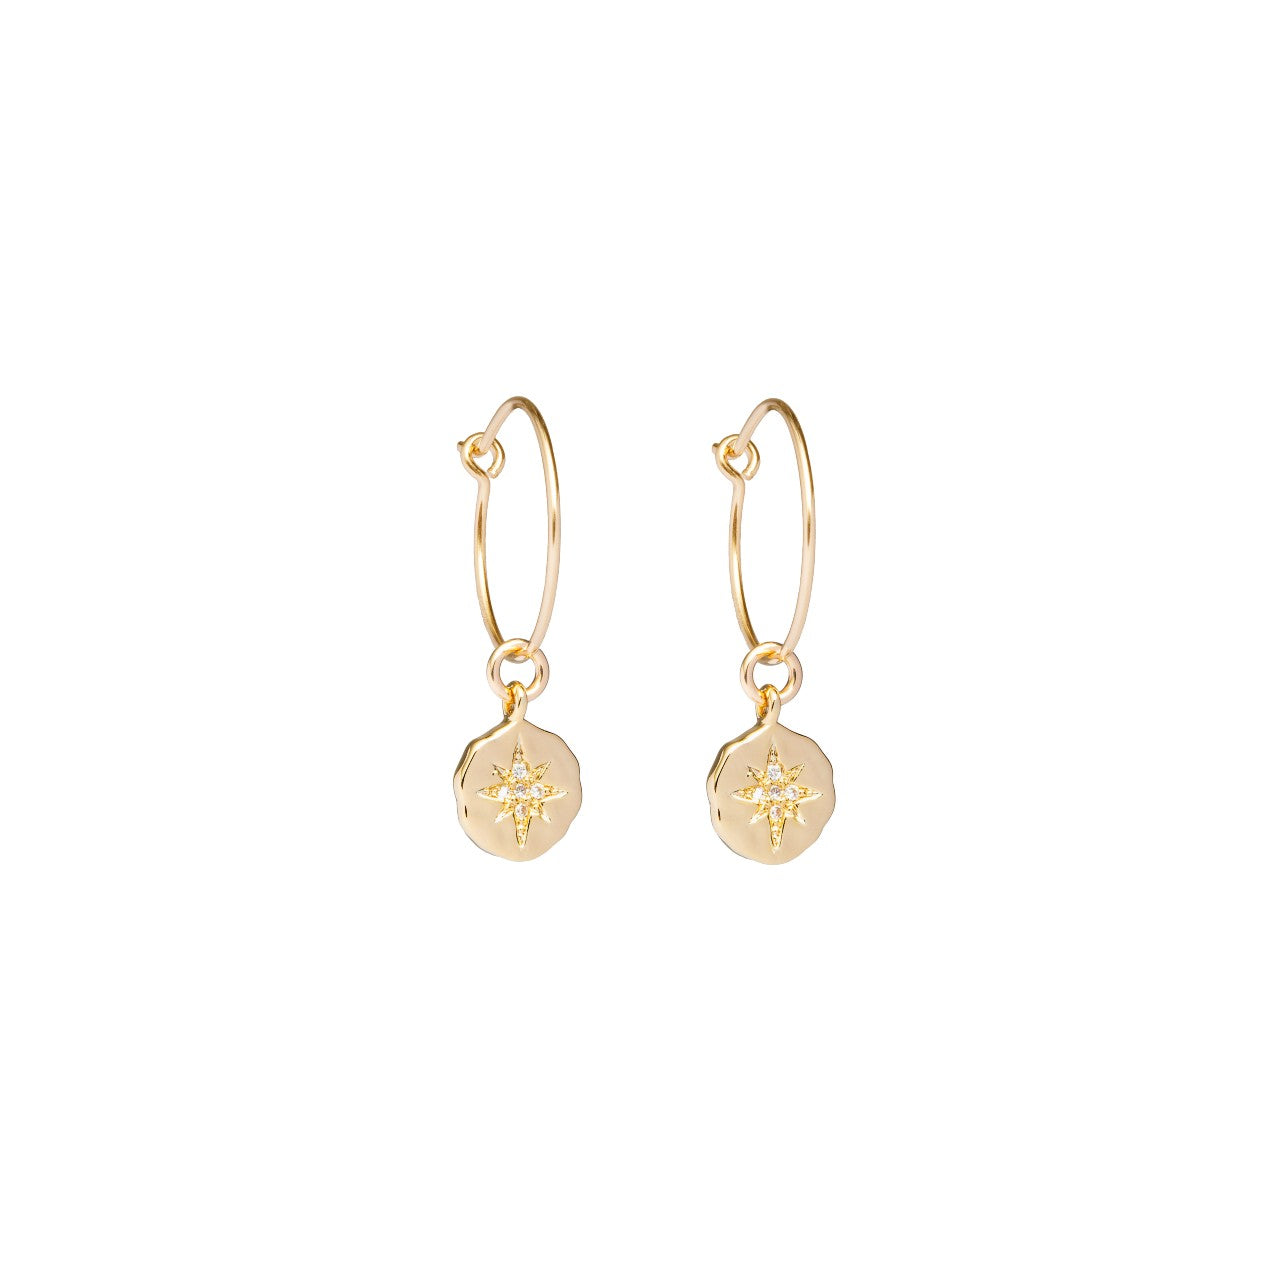 Celestial Coin Hoop Earrings (Gold Fill)